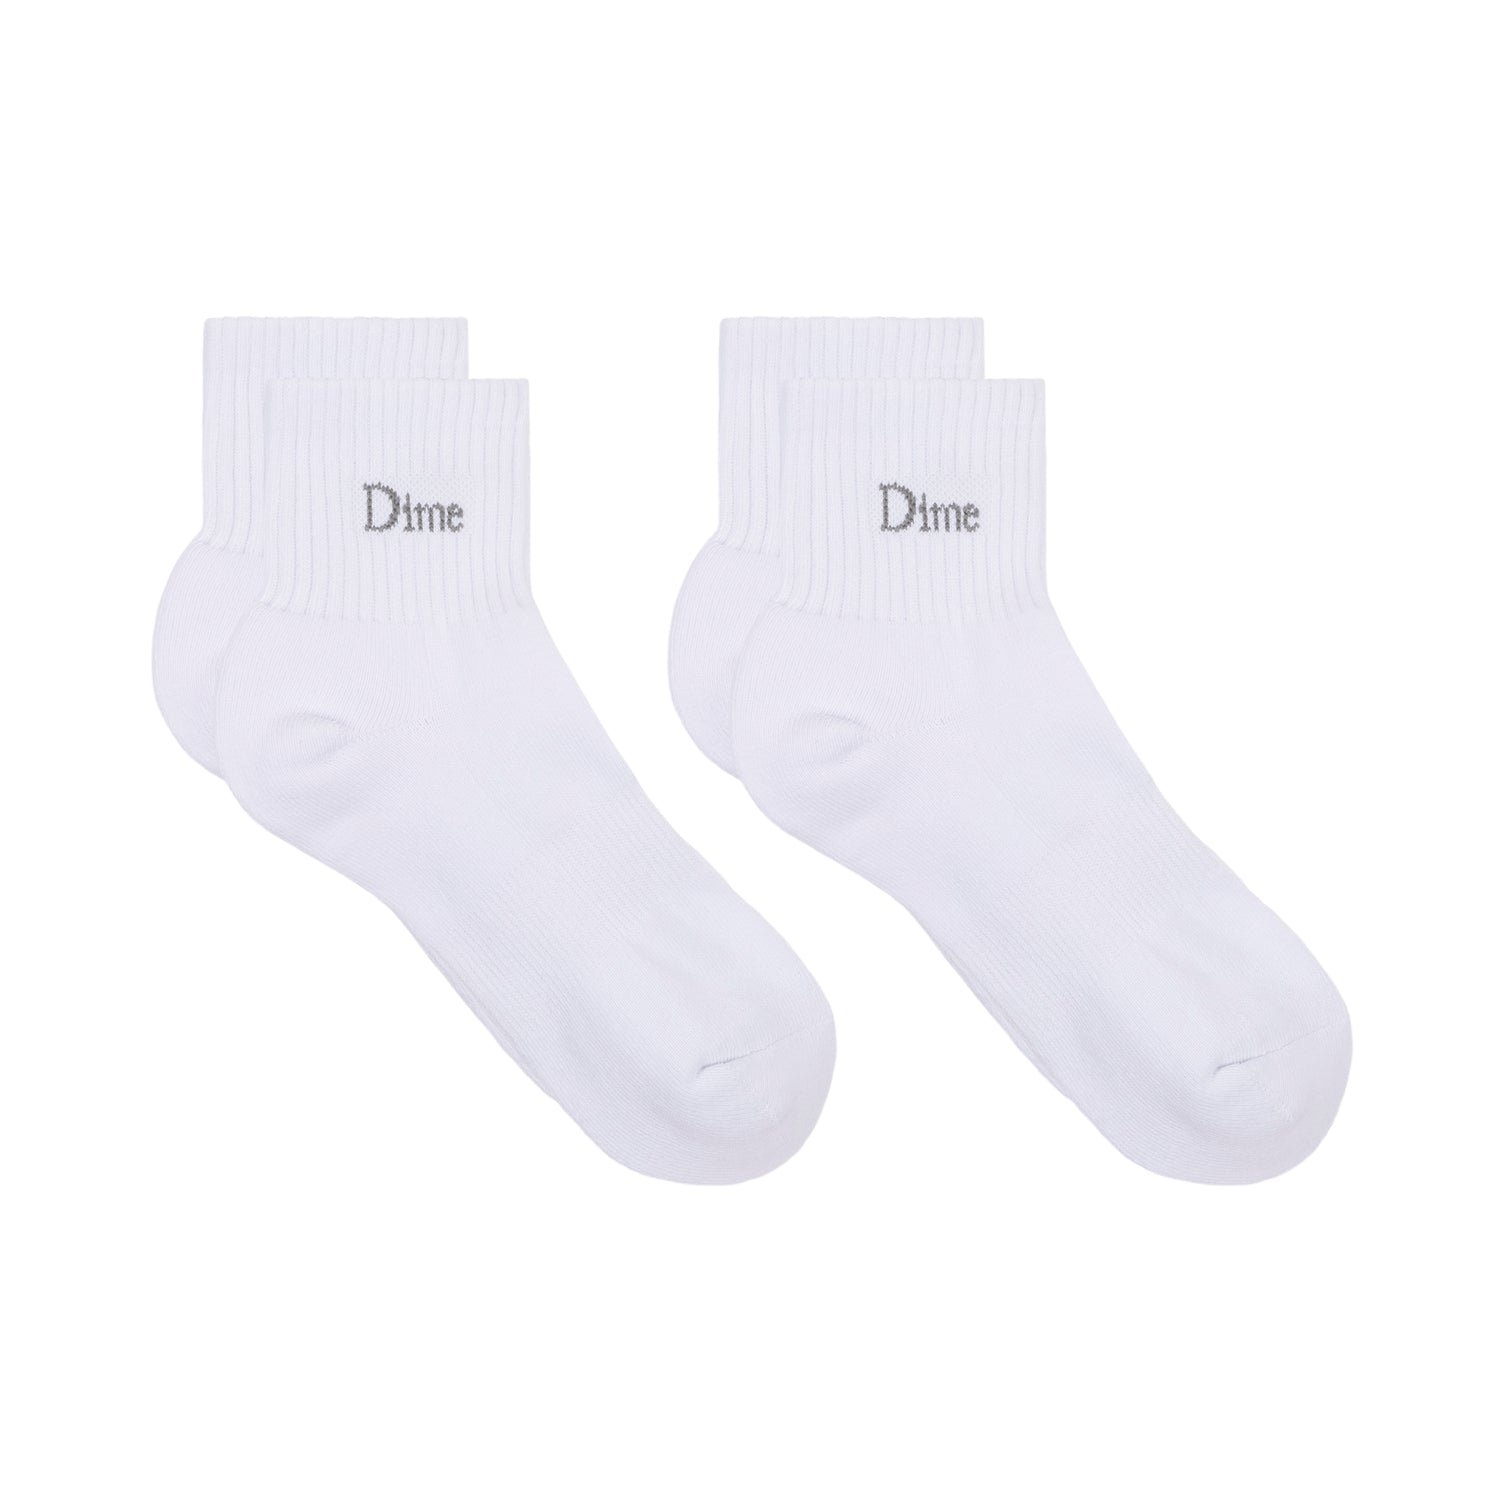 Classic 2 Pack Short Socks, White